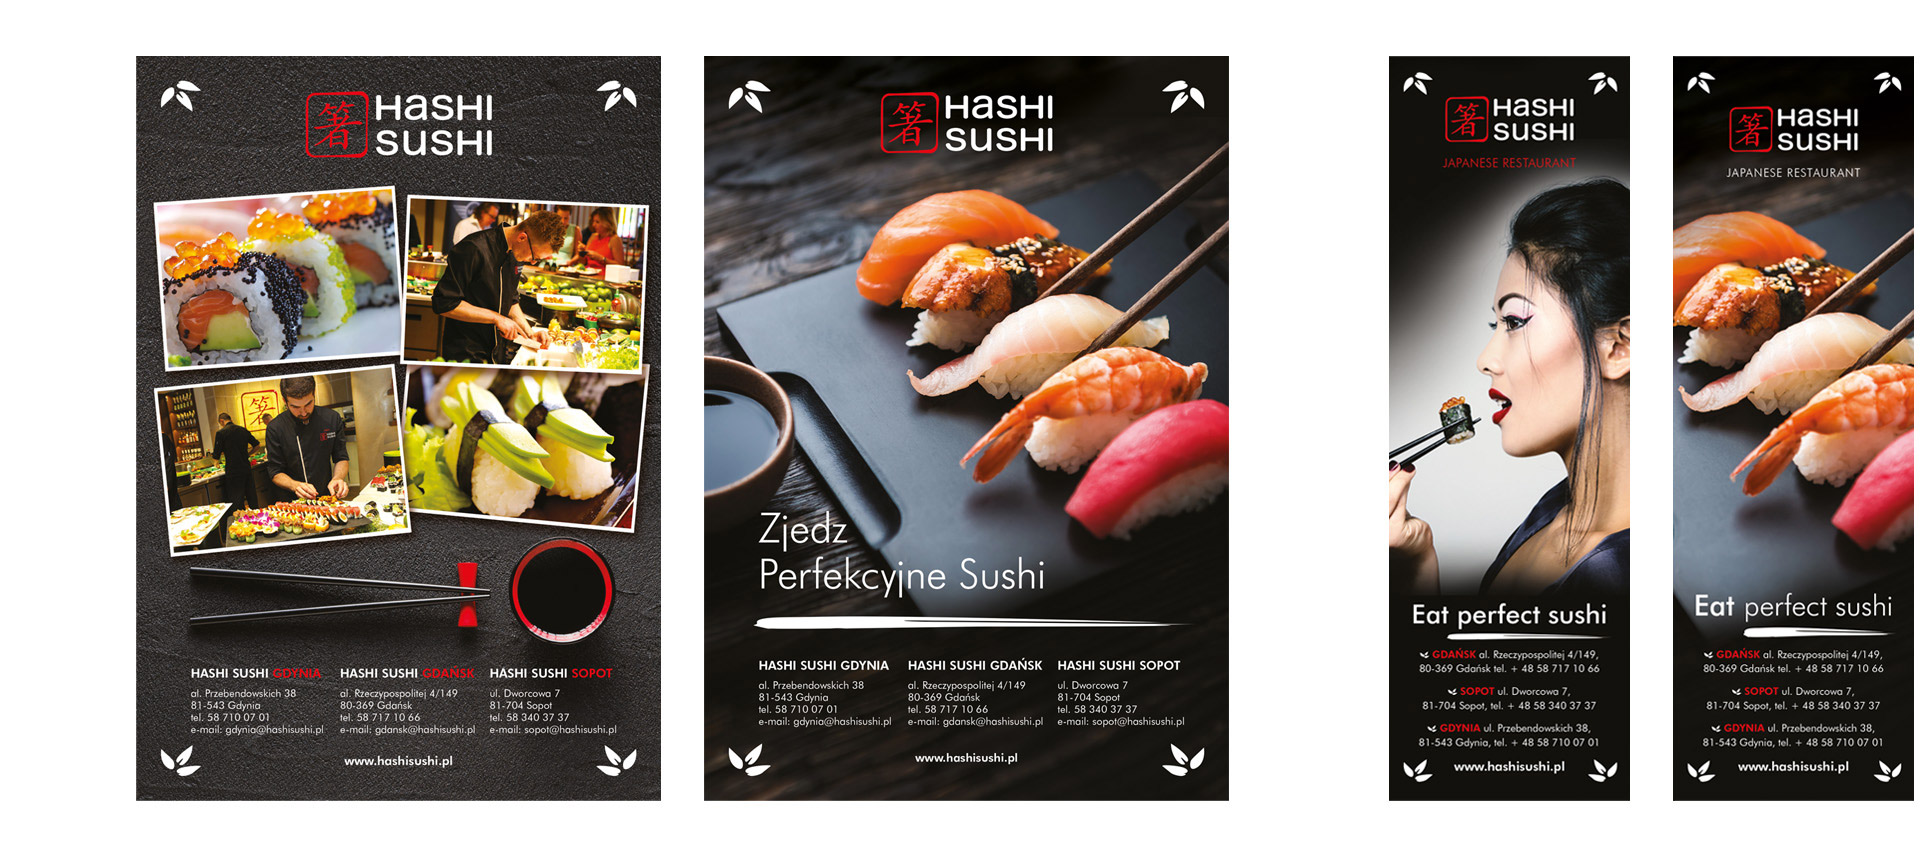 Hashi Sushi, identyfikacja wizualna, komunikacja reklamowa, projekt graficzny, key visual, kreacja